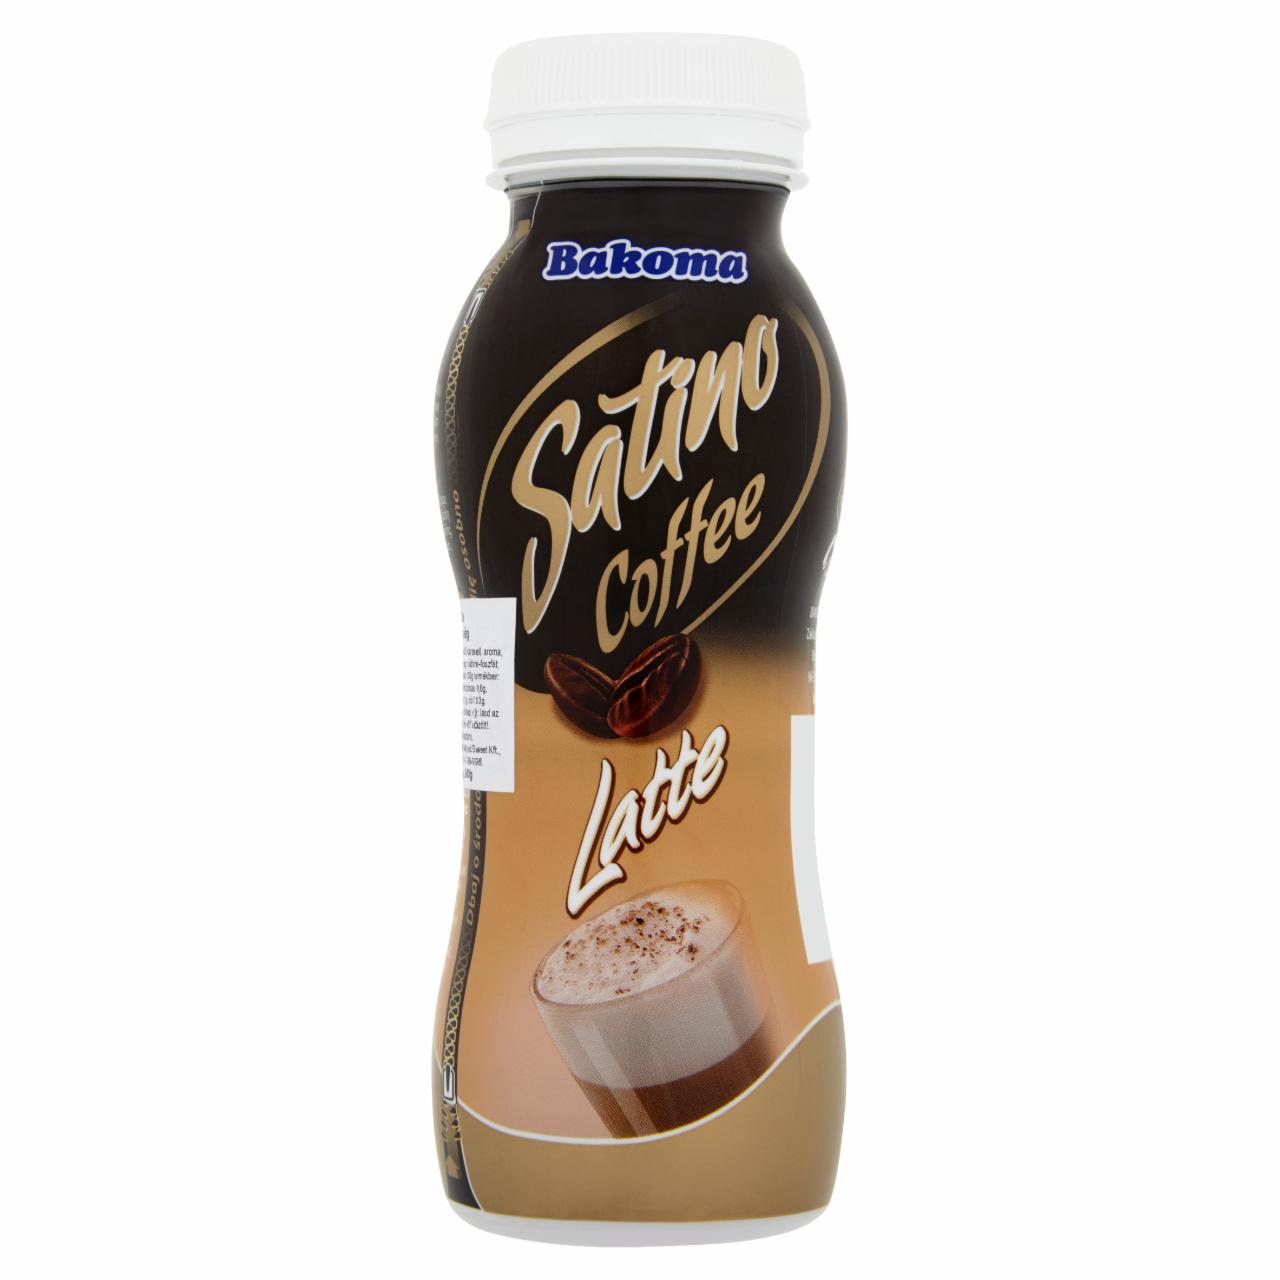 Képek - Bakoma Satino Latte kávés tejital különlegesség 240 g